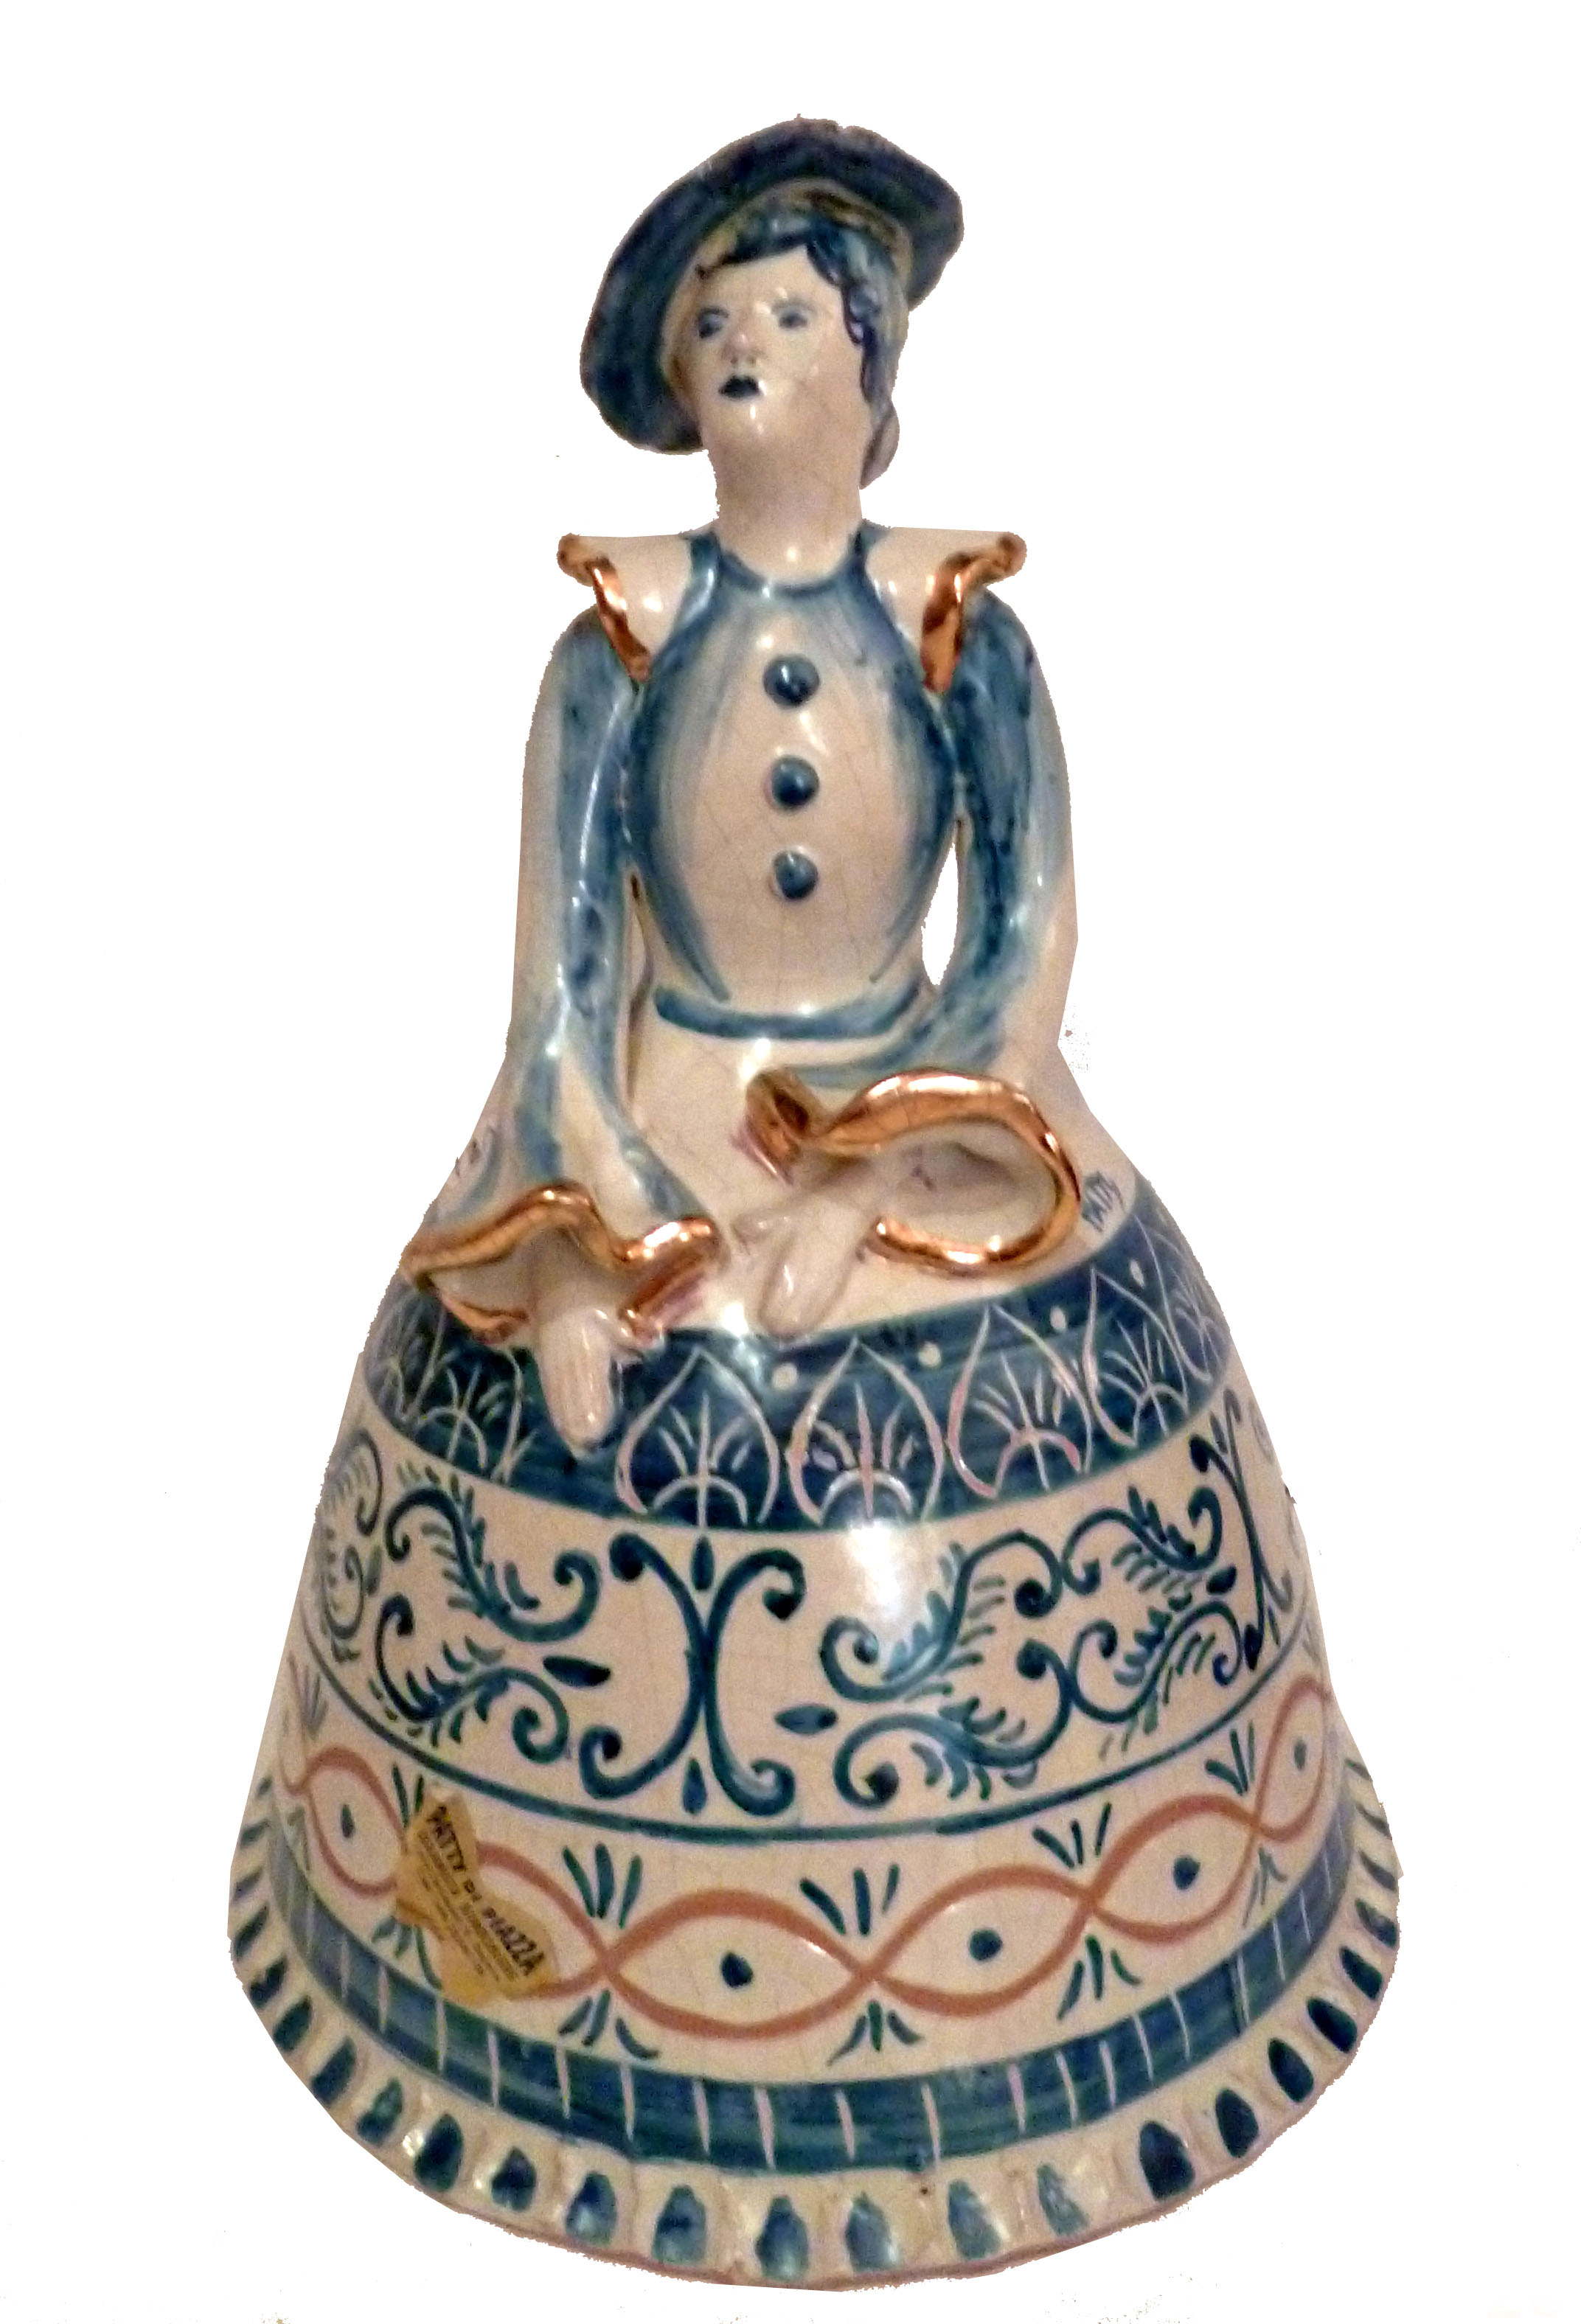 Bambola azzurra in stile anticato, dell'altezza di 34 cm